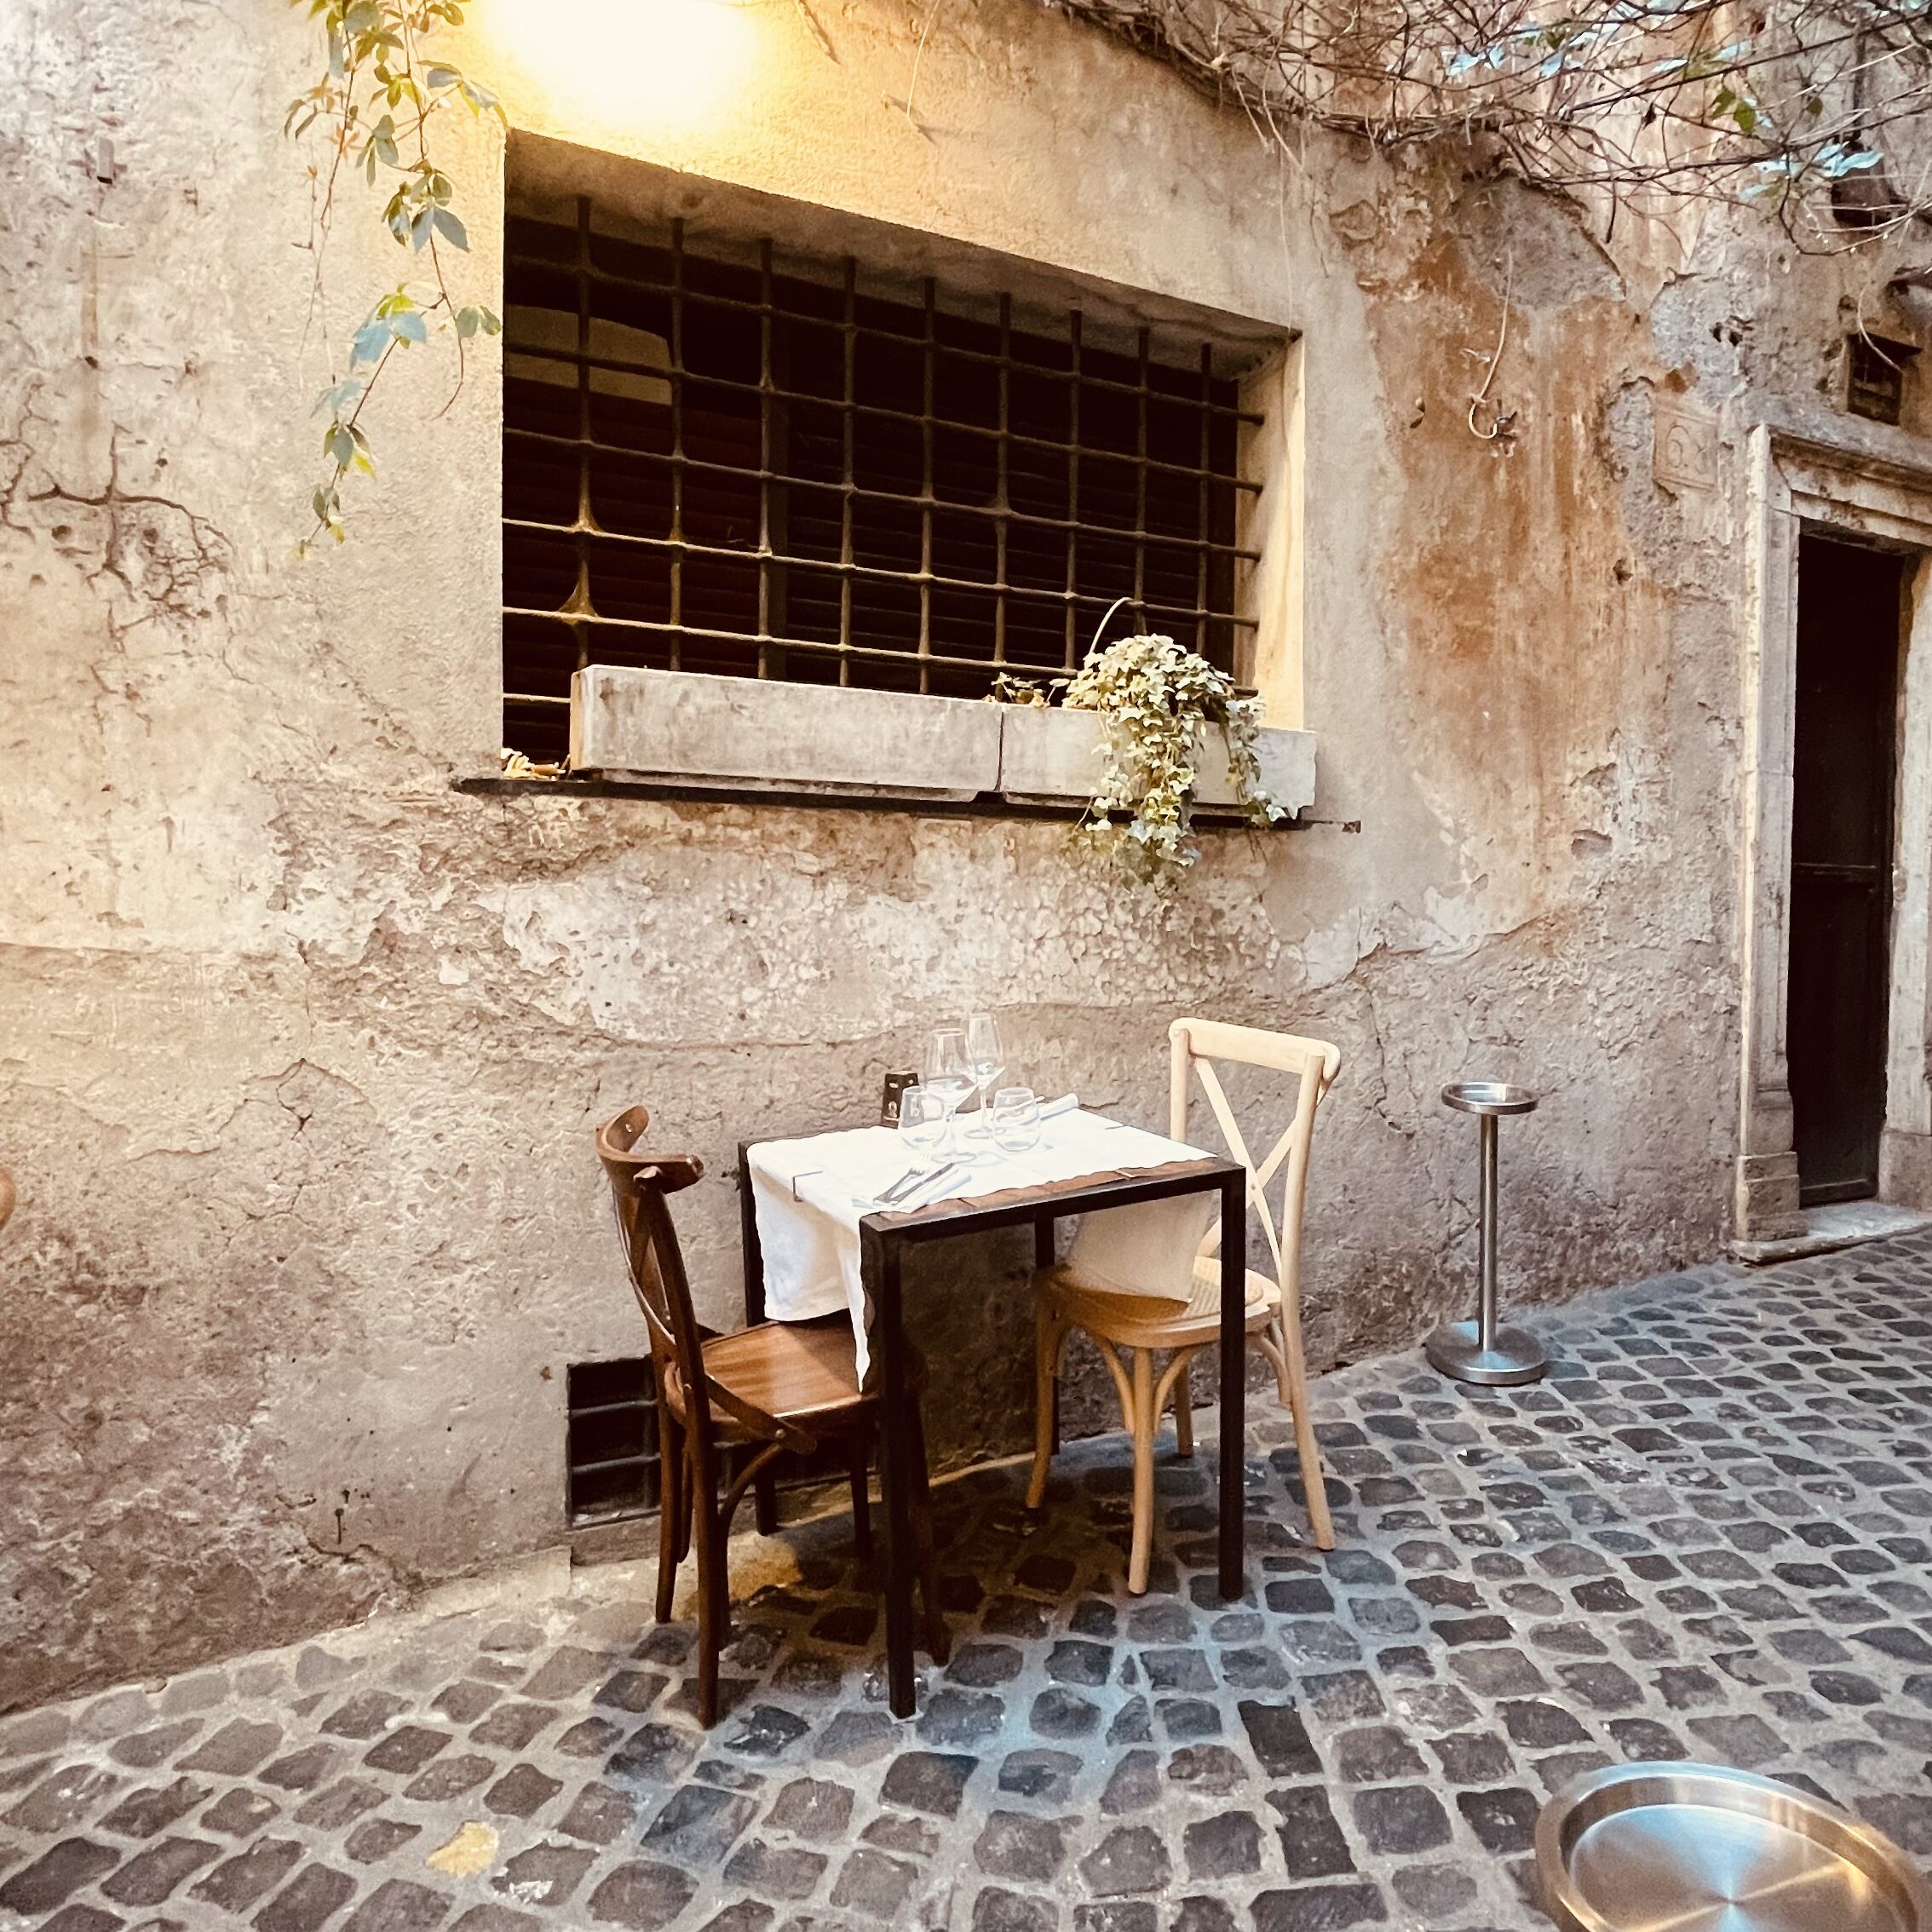 Mangiare tra i vicoli romantici di Roma, in una traversa di via dei Coronari. La Cucina del Teatro è un posto speciale dove mangiare piatti di stagione e del territorio rivisitati dalle sapienti mani dello chef.